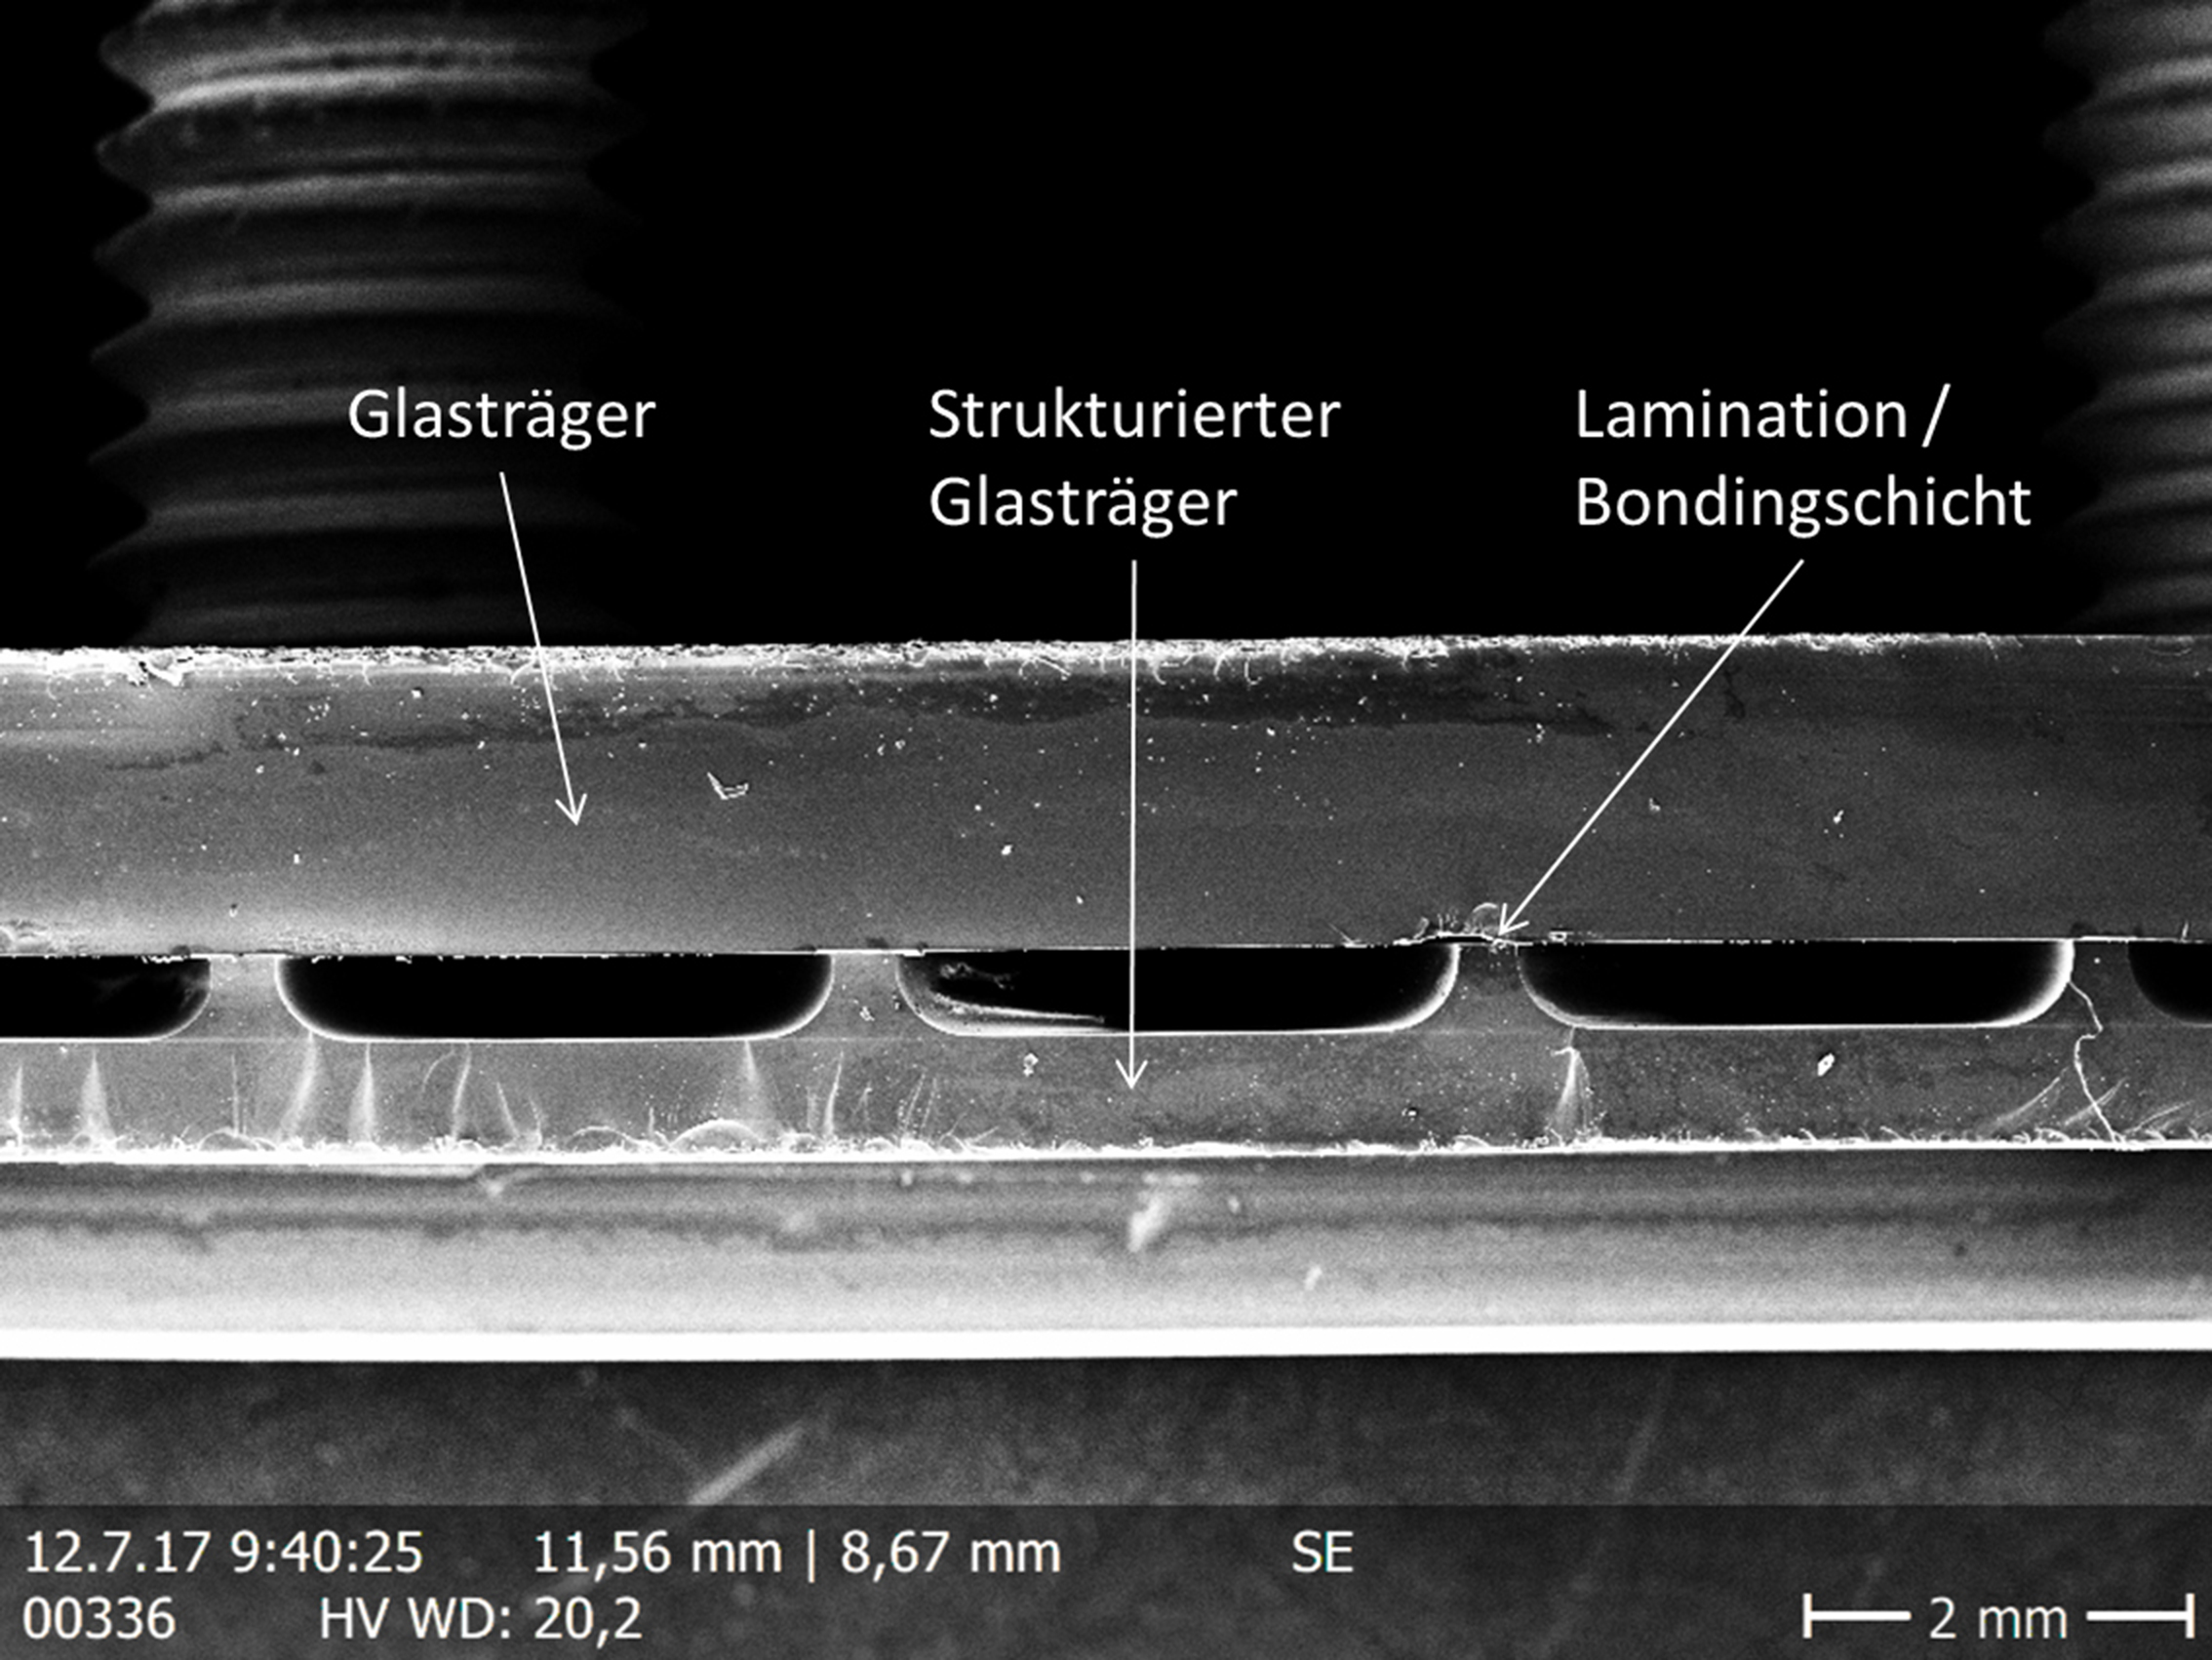 Neuartiges Bonding-Verfahren verschließt strukturierte Glasträger exakt